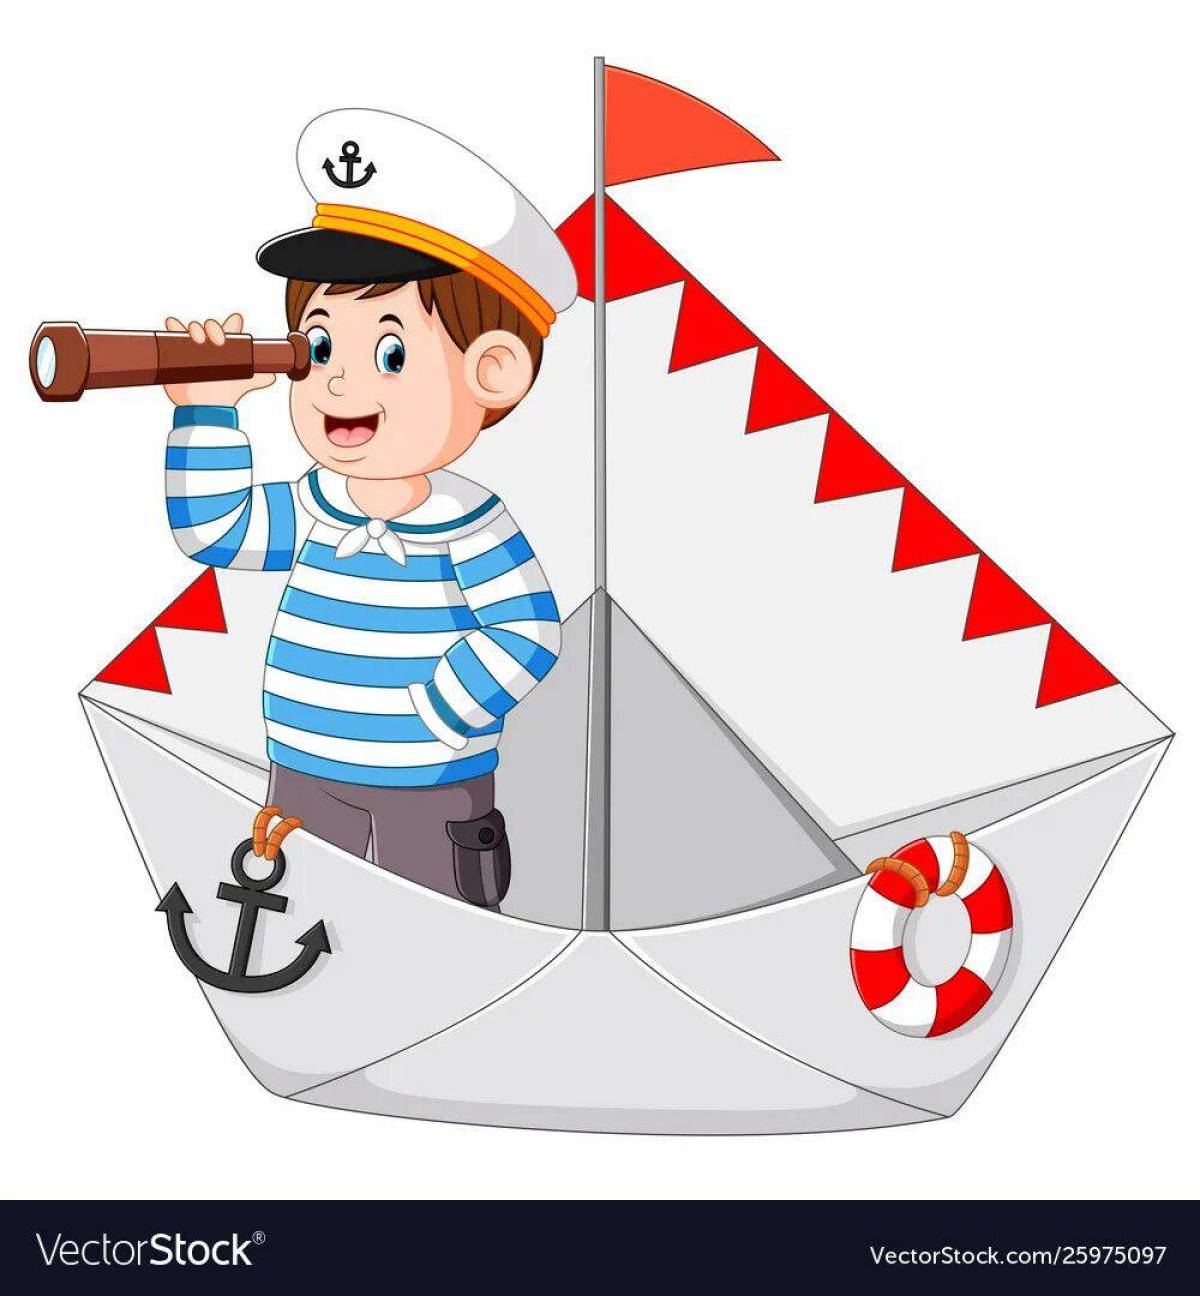 Моряк для детей #8